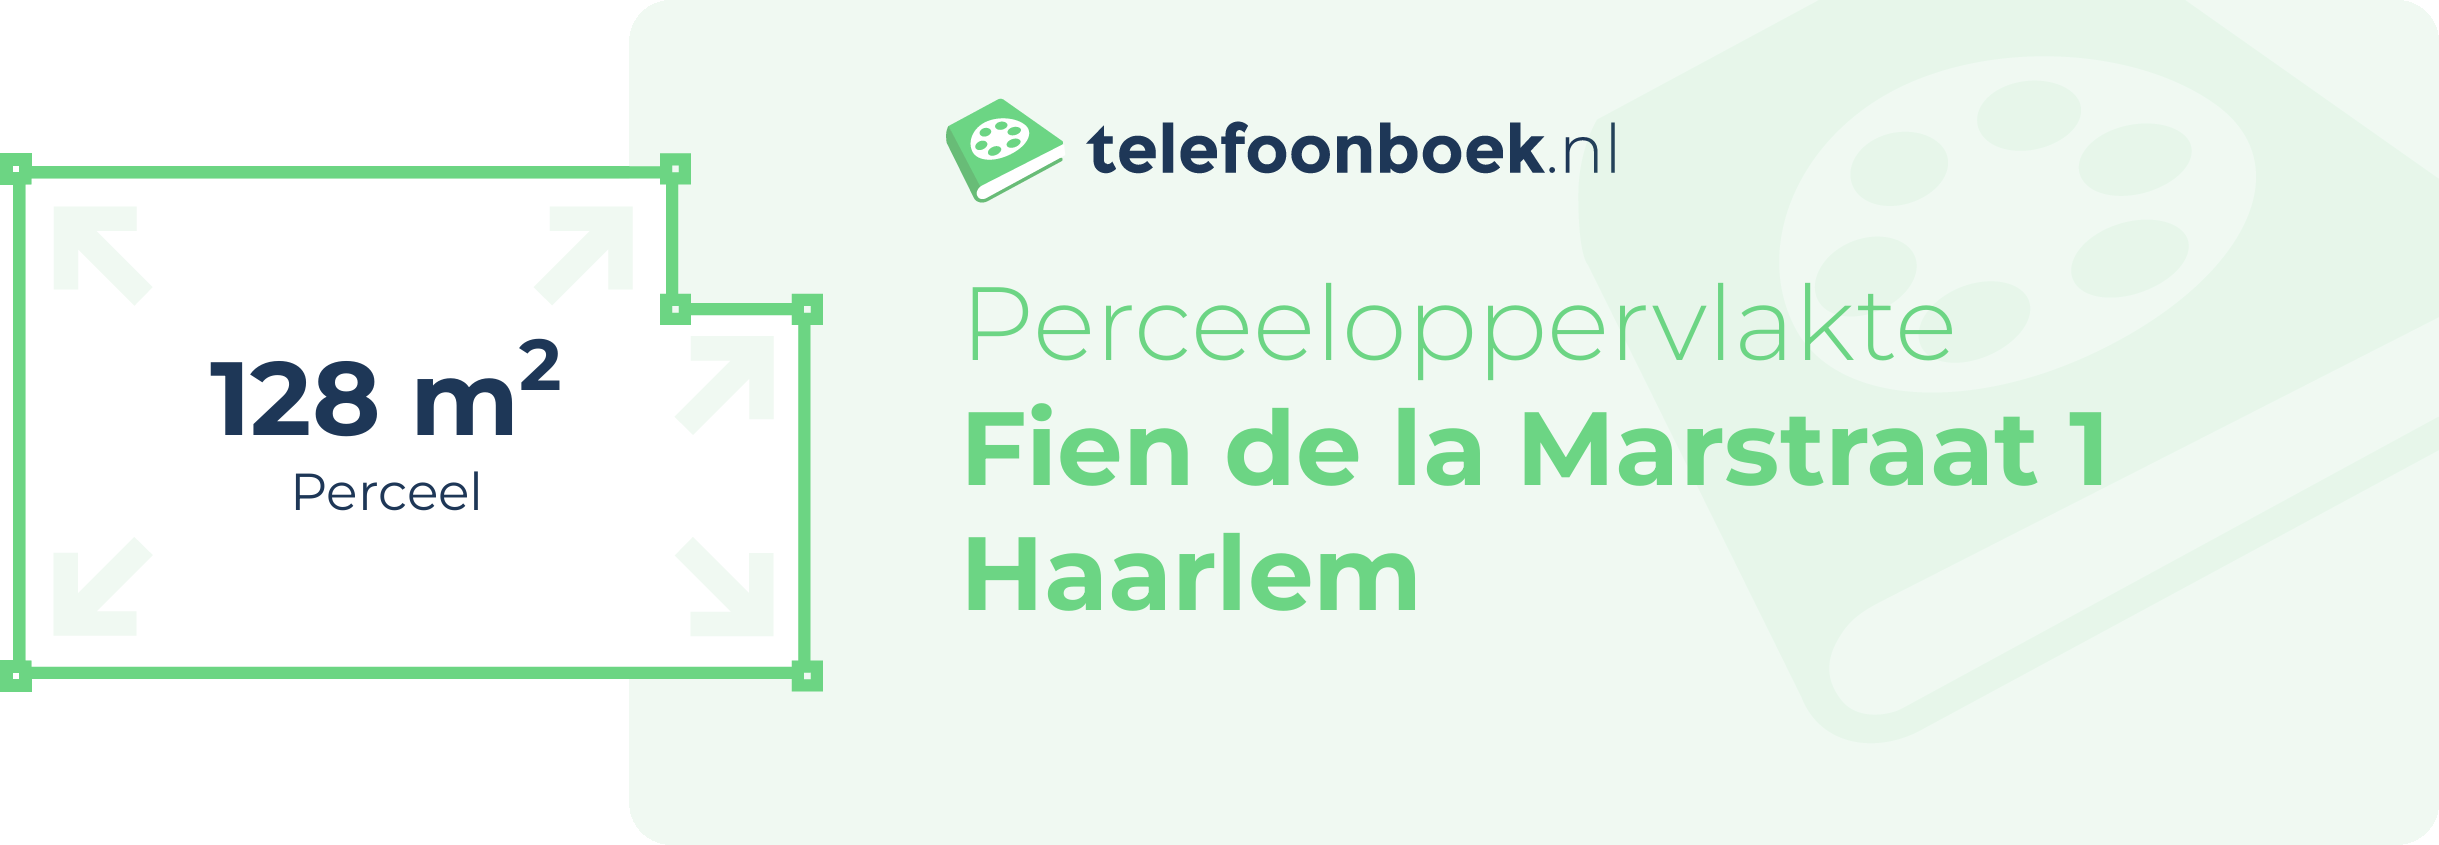 Perceeloppervlakte Fien De La Marstraat 1 Haarlem